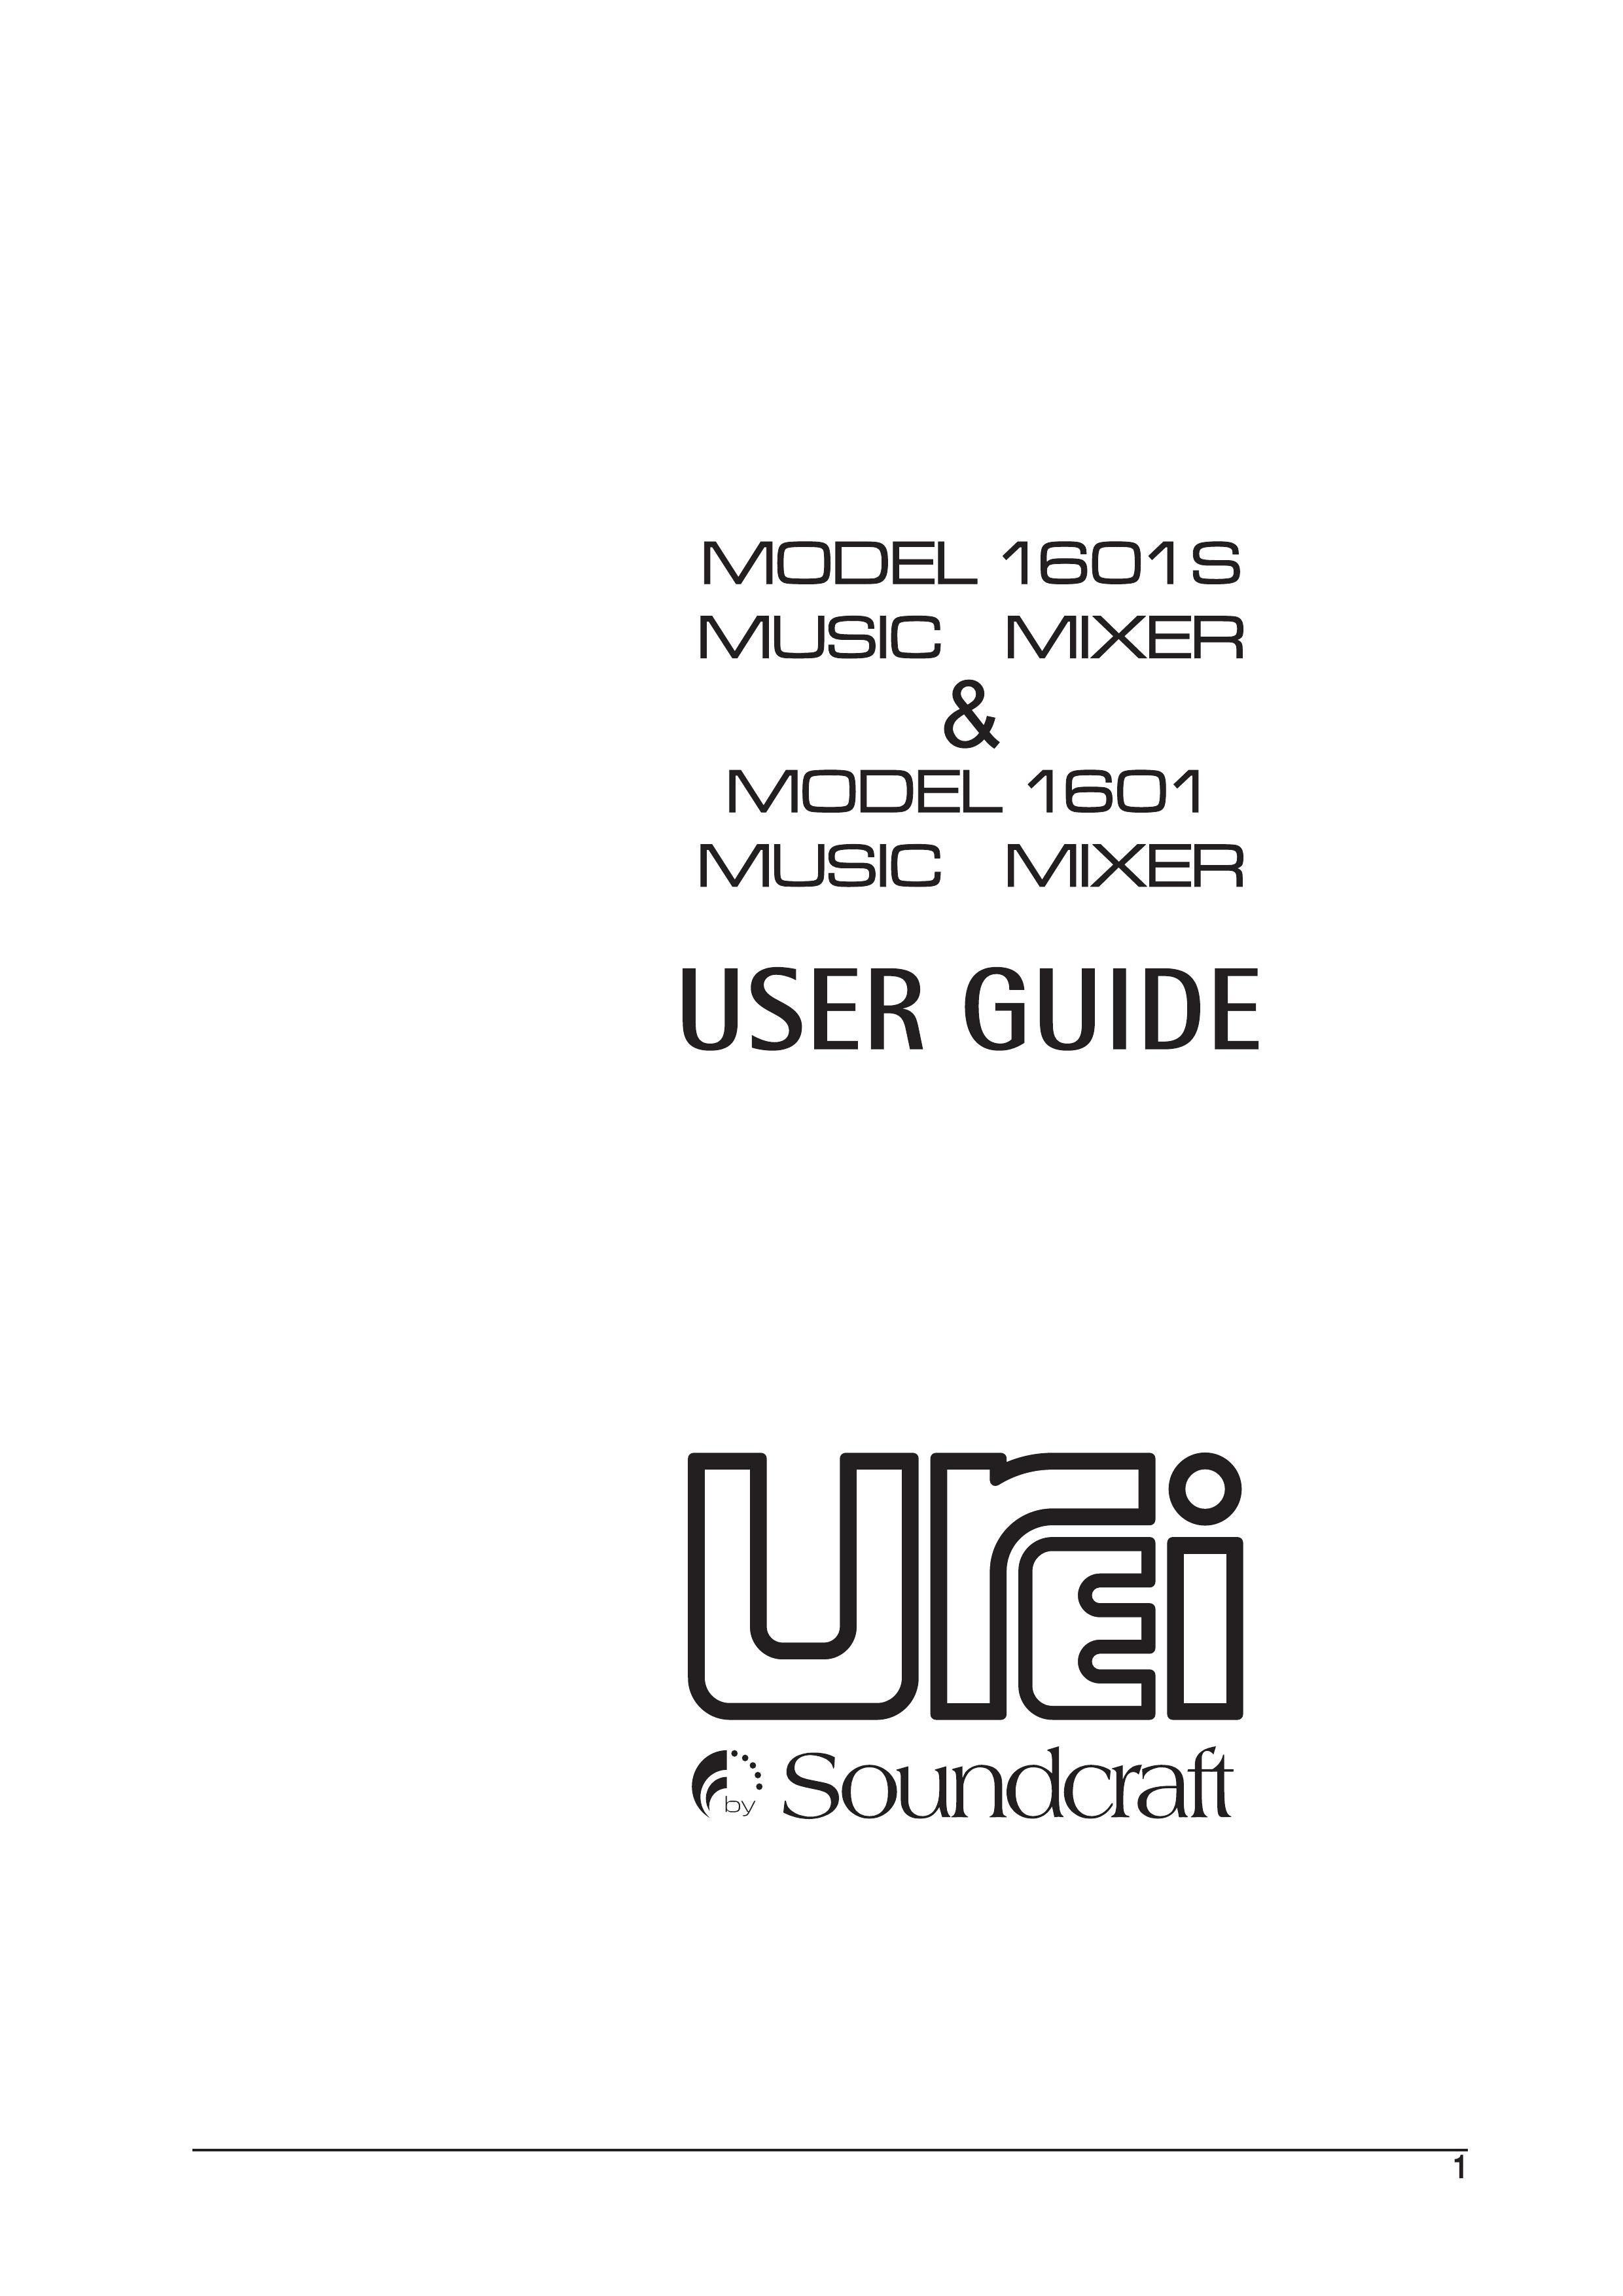 SoundCraft 1601 Music Mixer User Manual